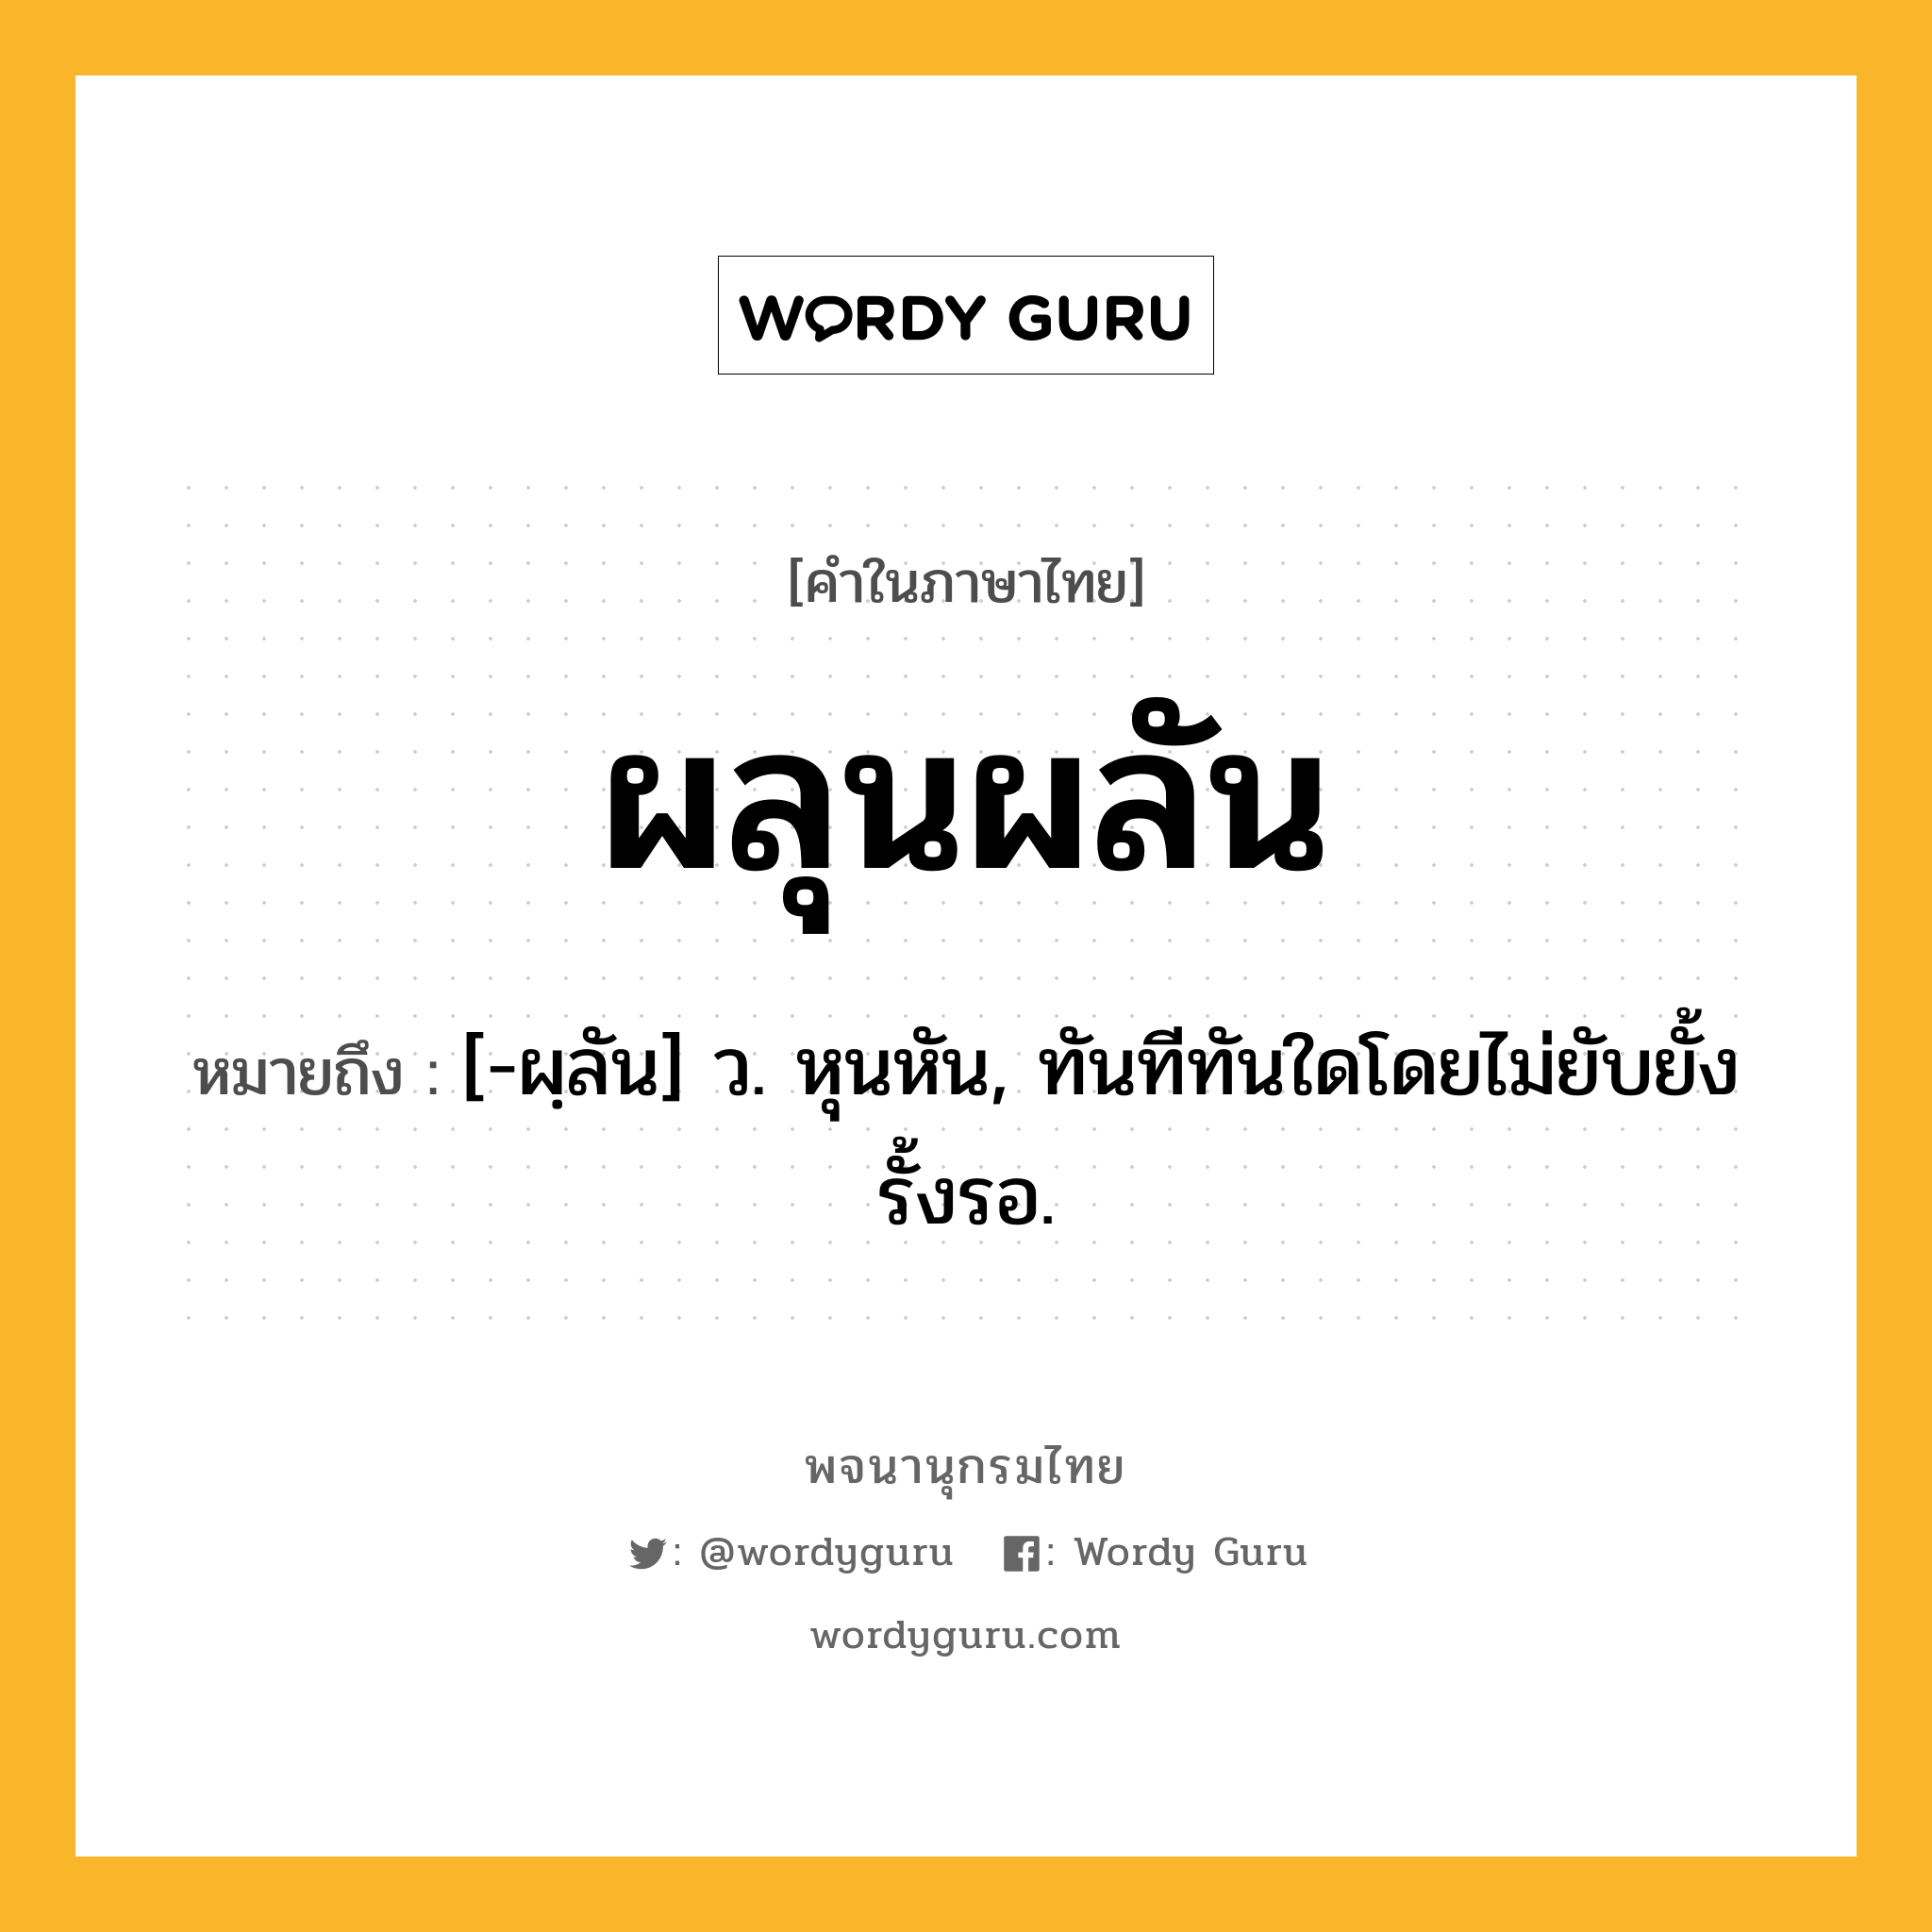 ผลุนผลัน ความหมาย หมายถึงอะไร?, คำในภาษาไทย ผลุนผลัน หมายถึง [-ผฺลัน] ว. หุนหัน, ทันทีทันใดโดยไม่ยับยั้งรั้งรอ.